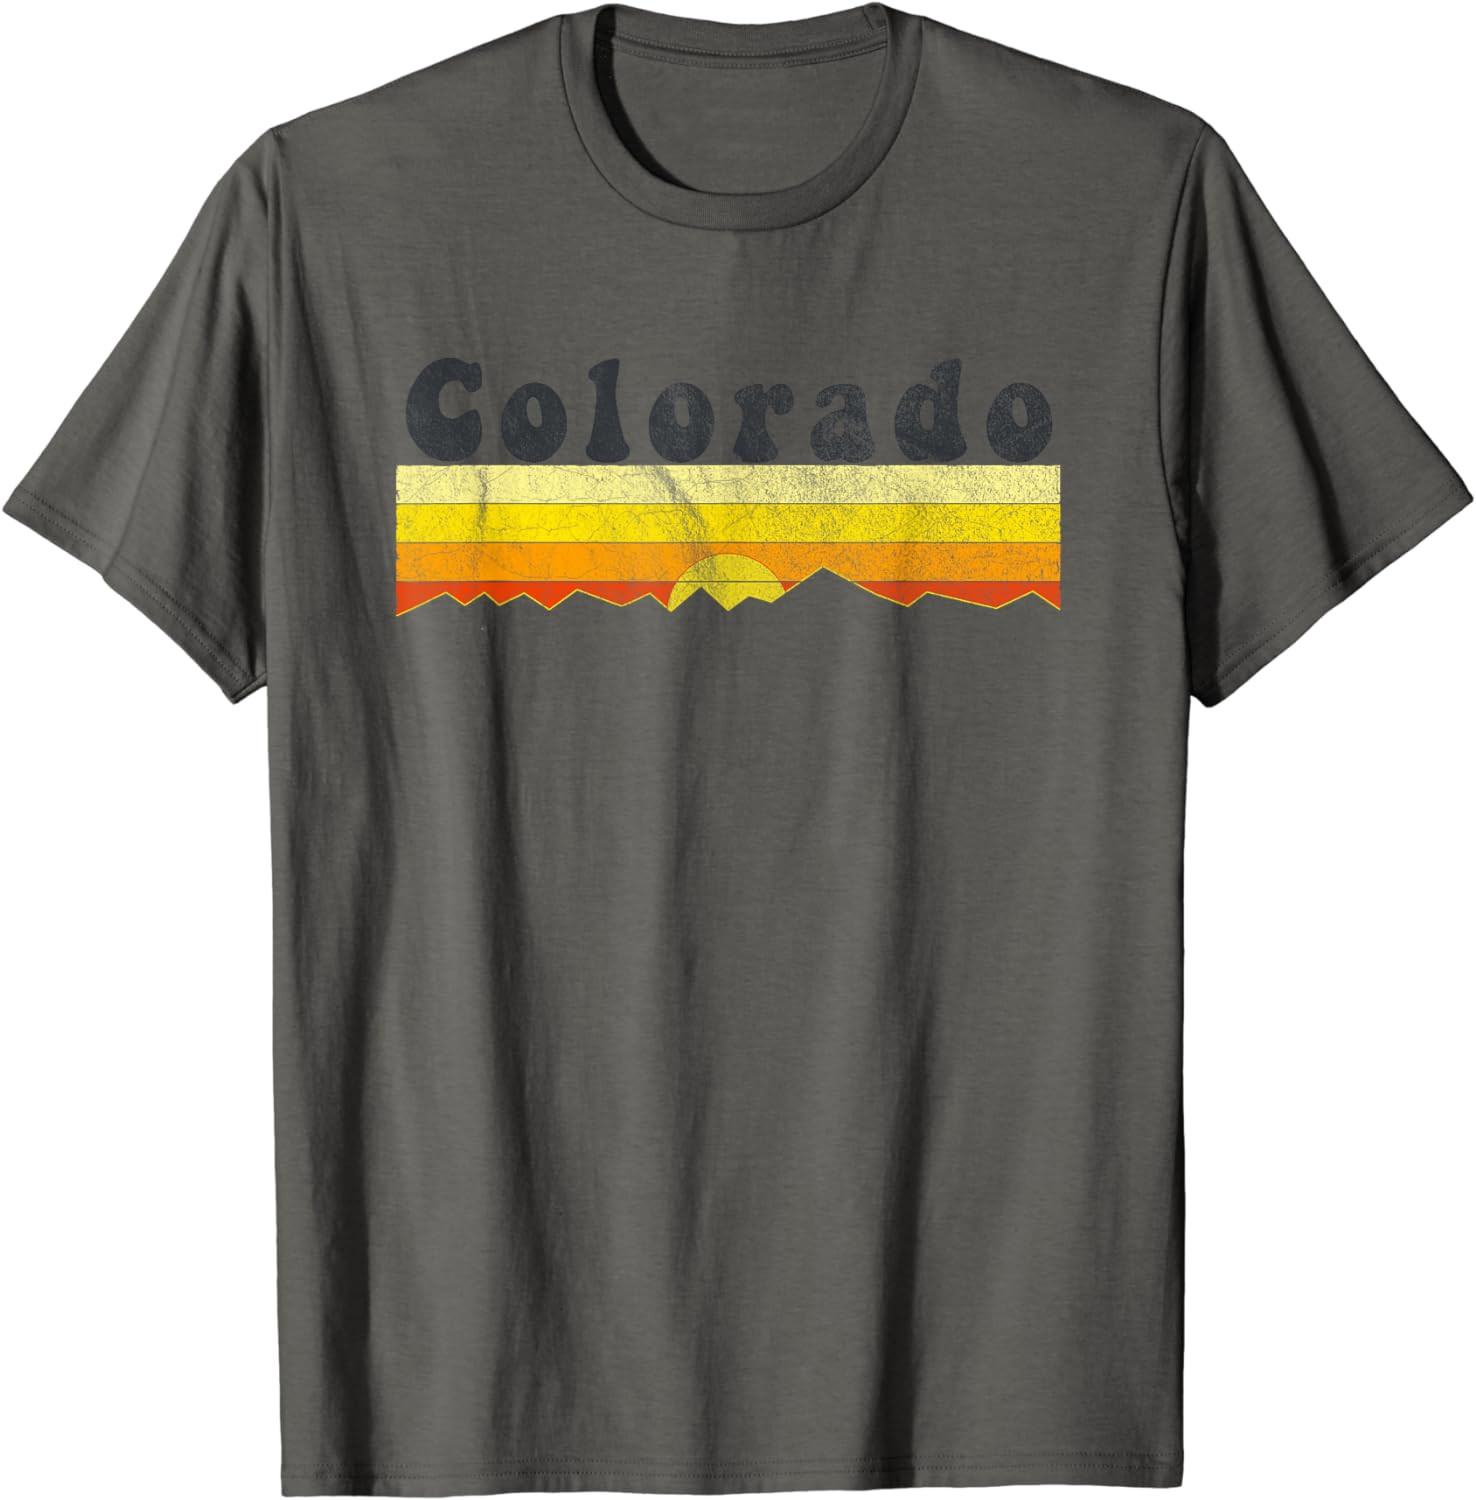 Vintage 70s Colorado Retro T-Shirt